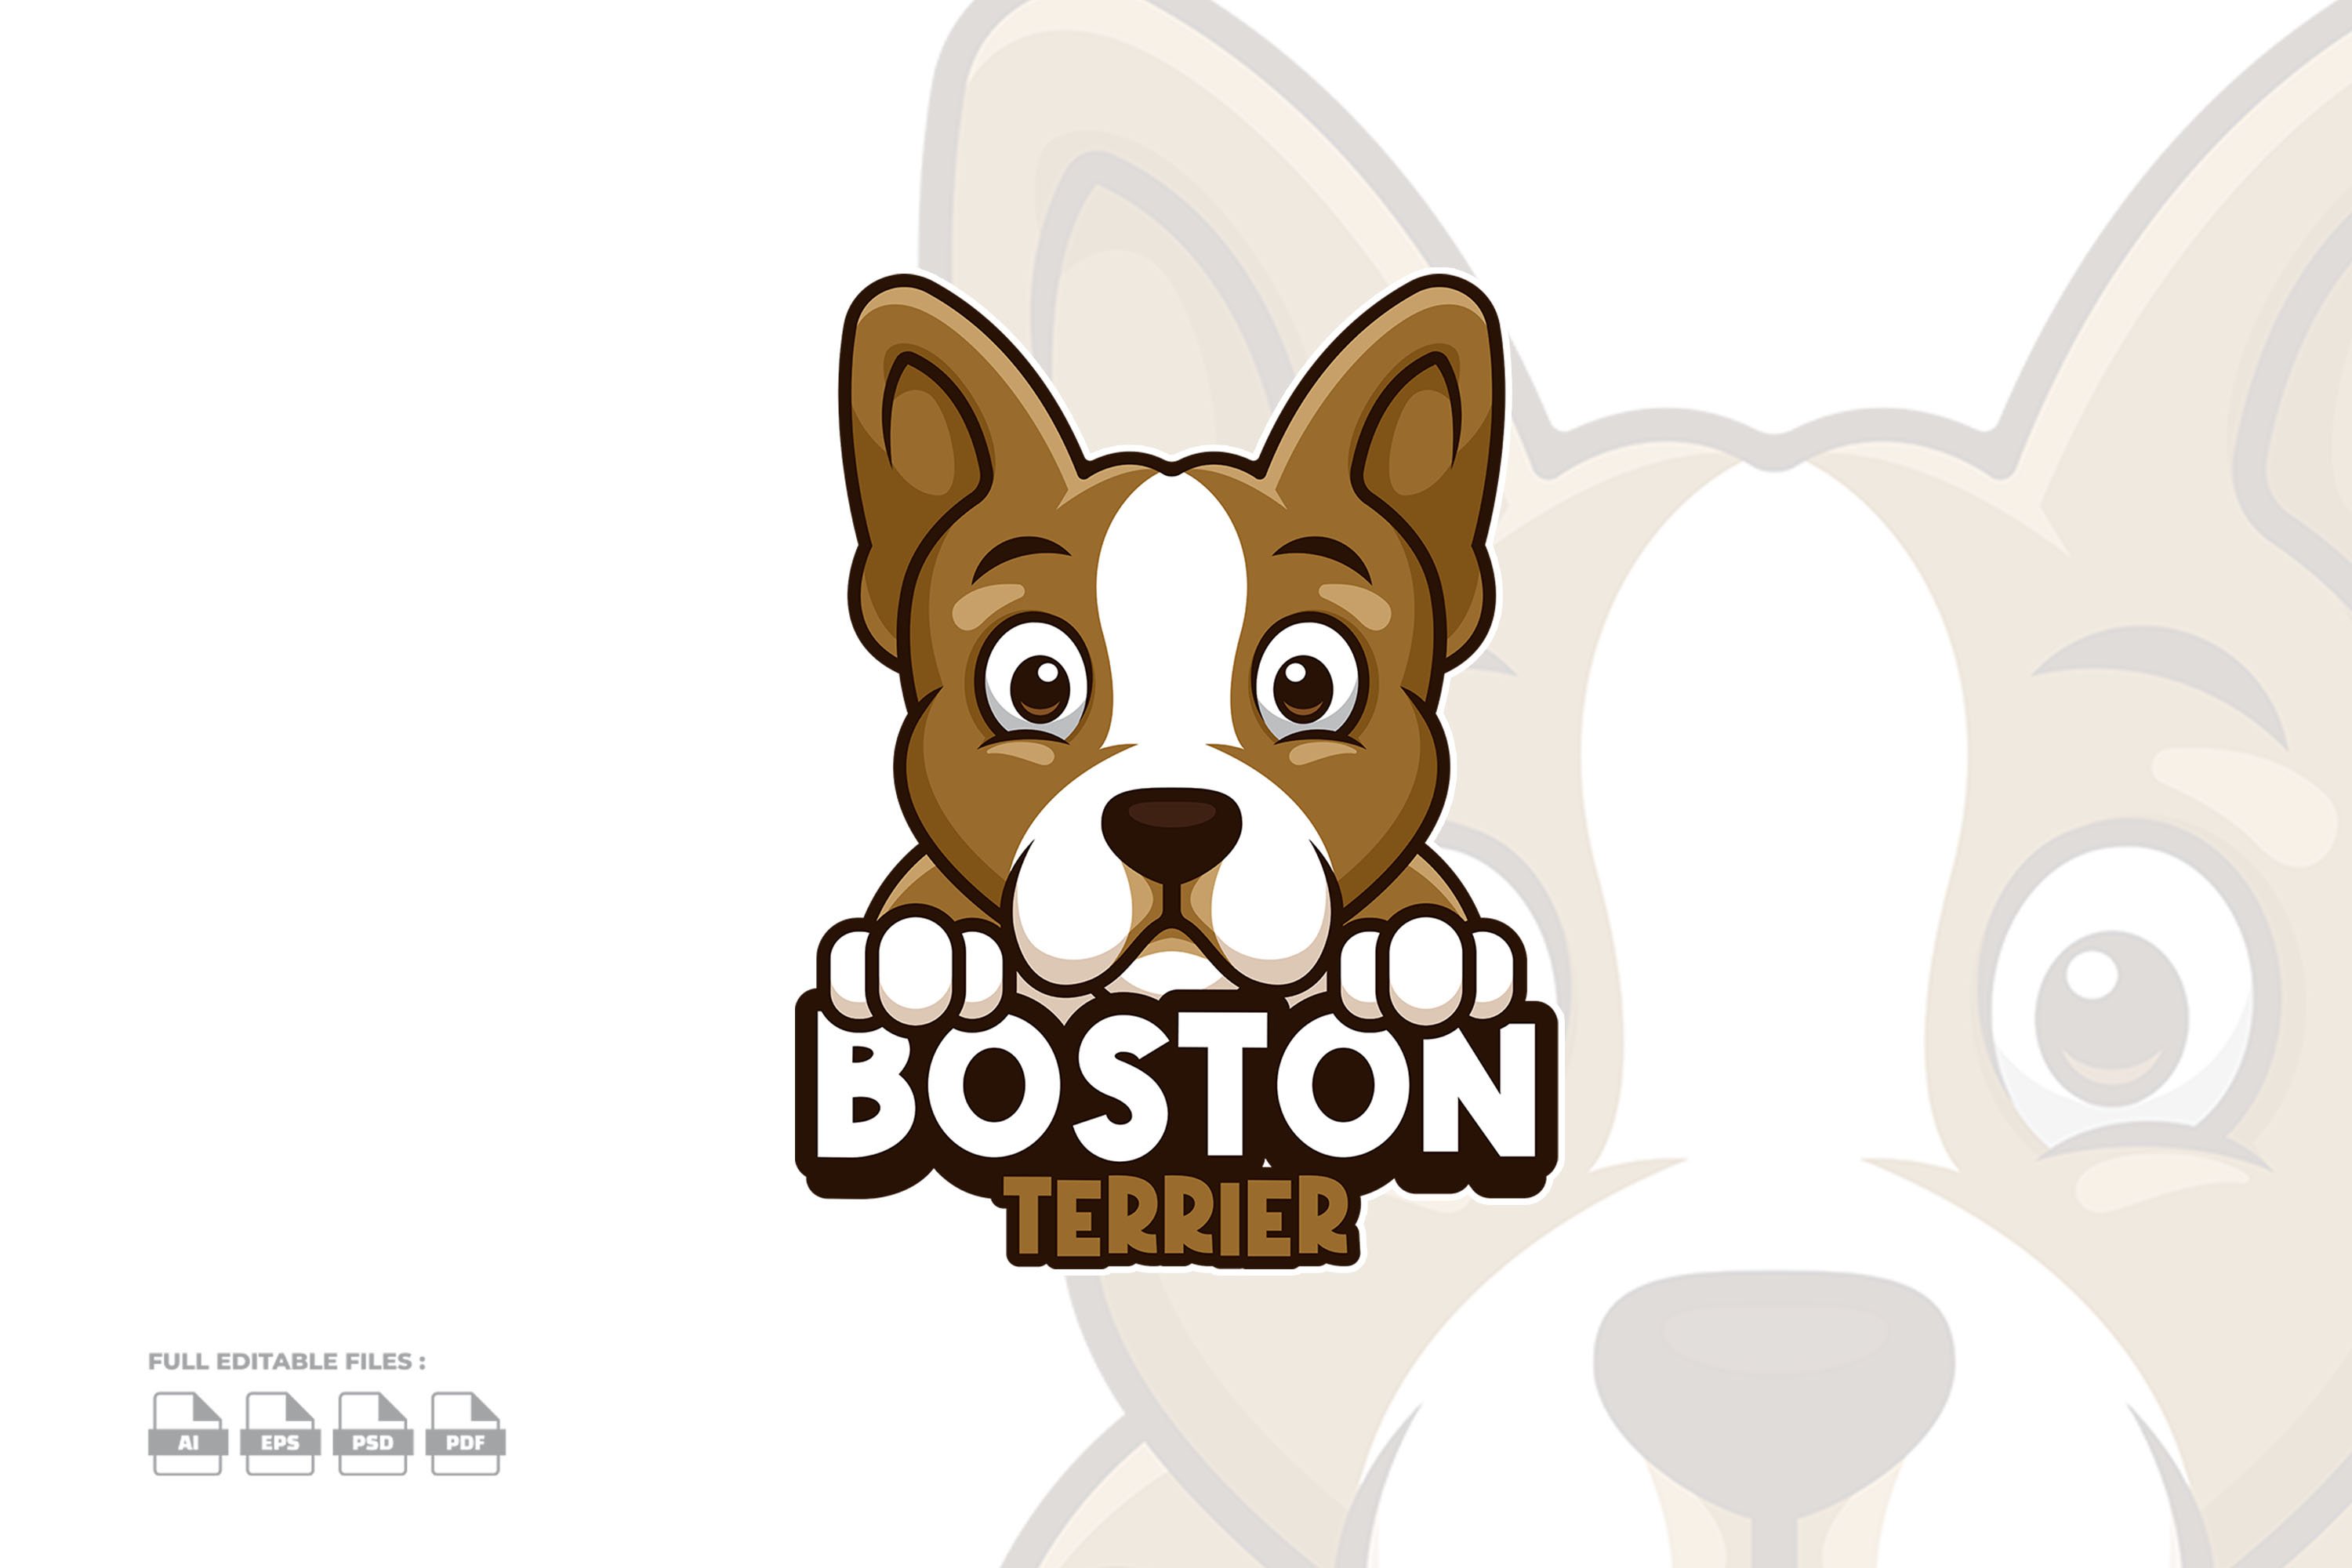 Boston Terrier Dog Logo cover image.